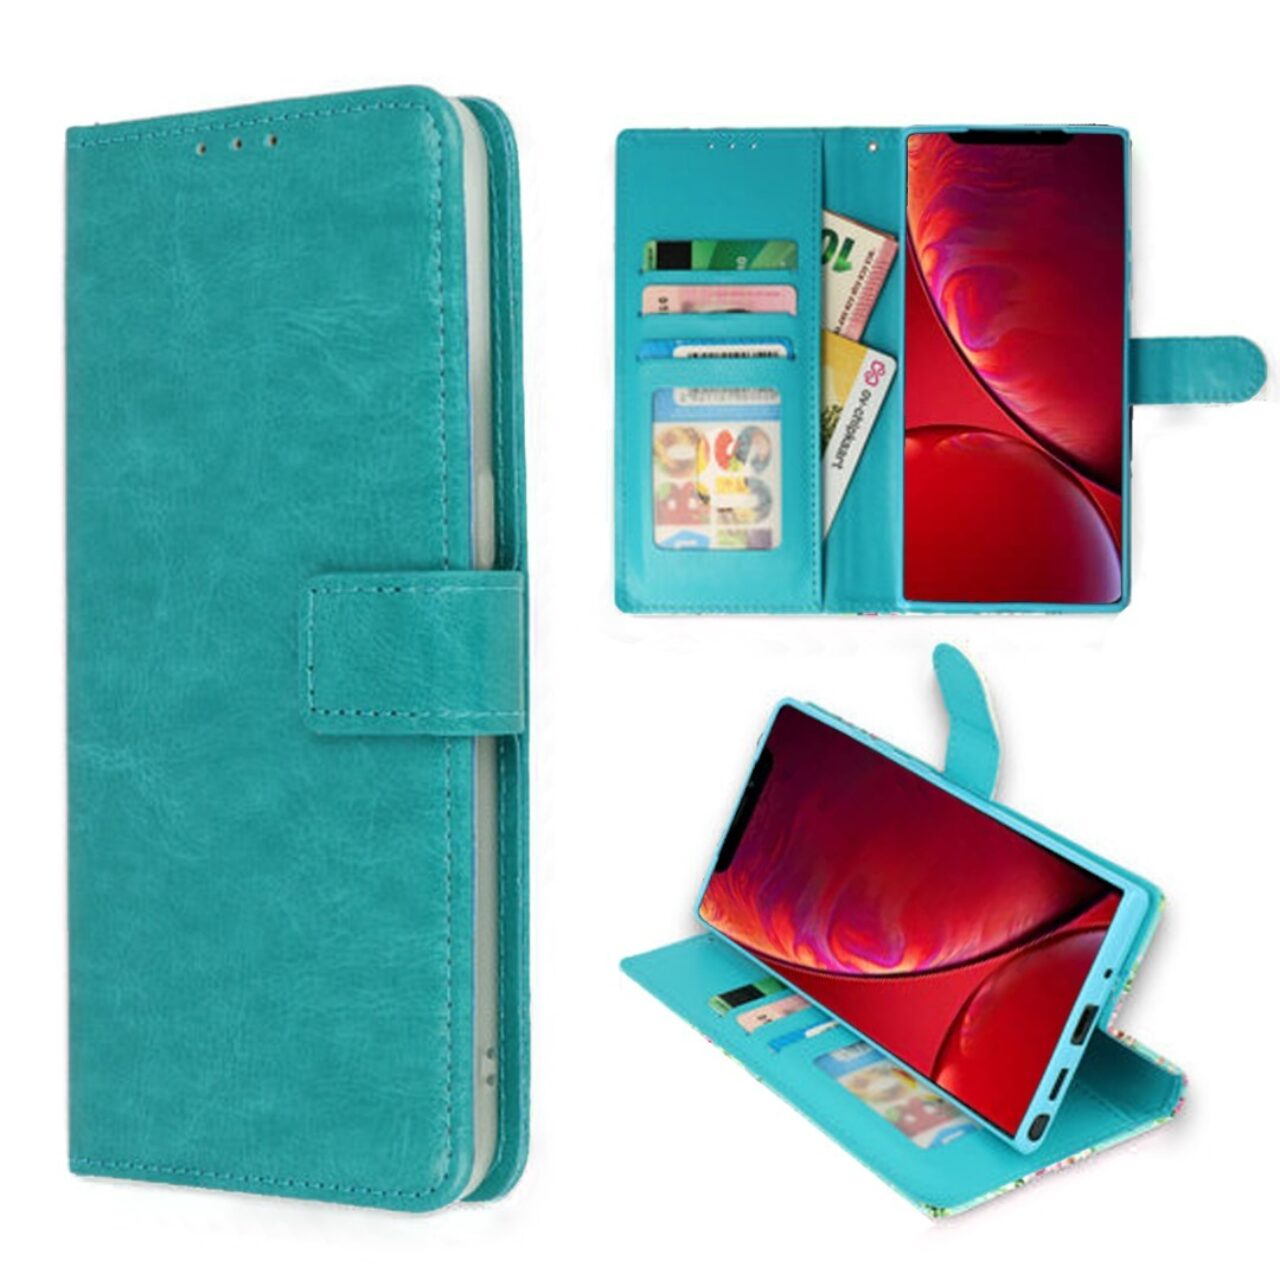 AAA boek turquoise-hoesje-case-schutzhulle-coque-cover-smartphone-book case-boekmodel